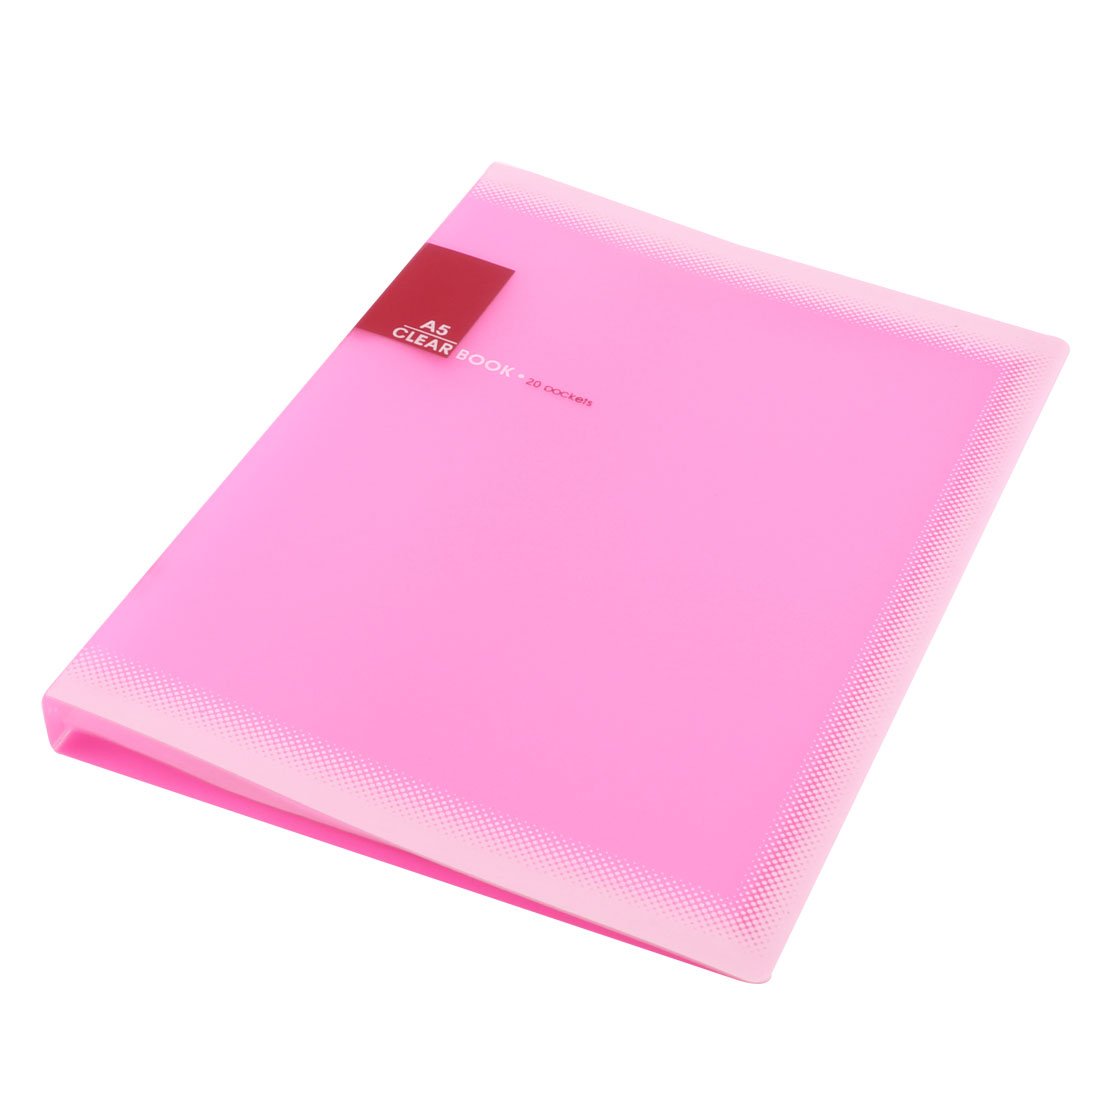 IMC Hot Plastic A5 Paper 20 Pockets File Document Folder Holder, Pink